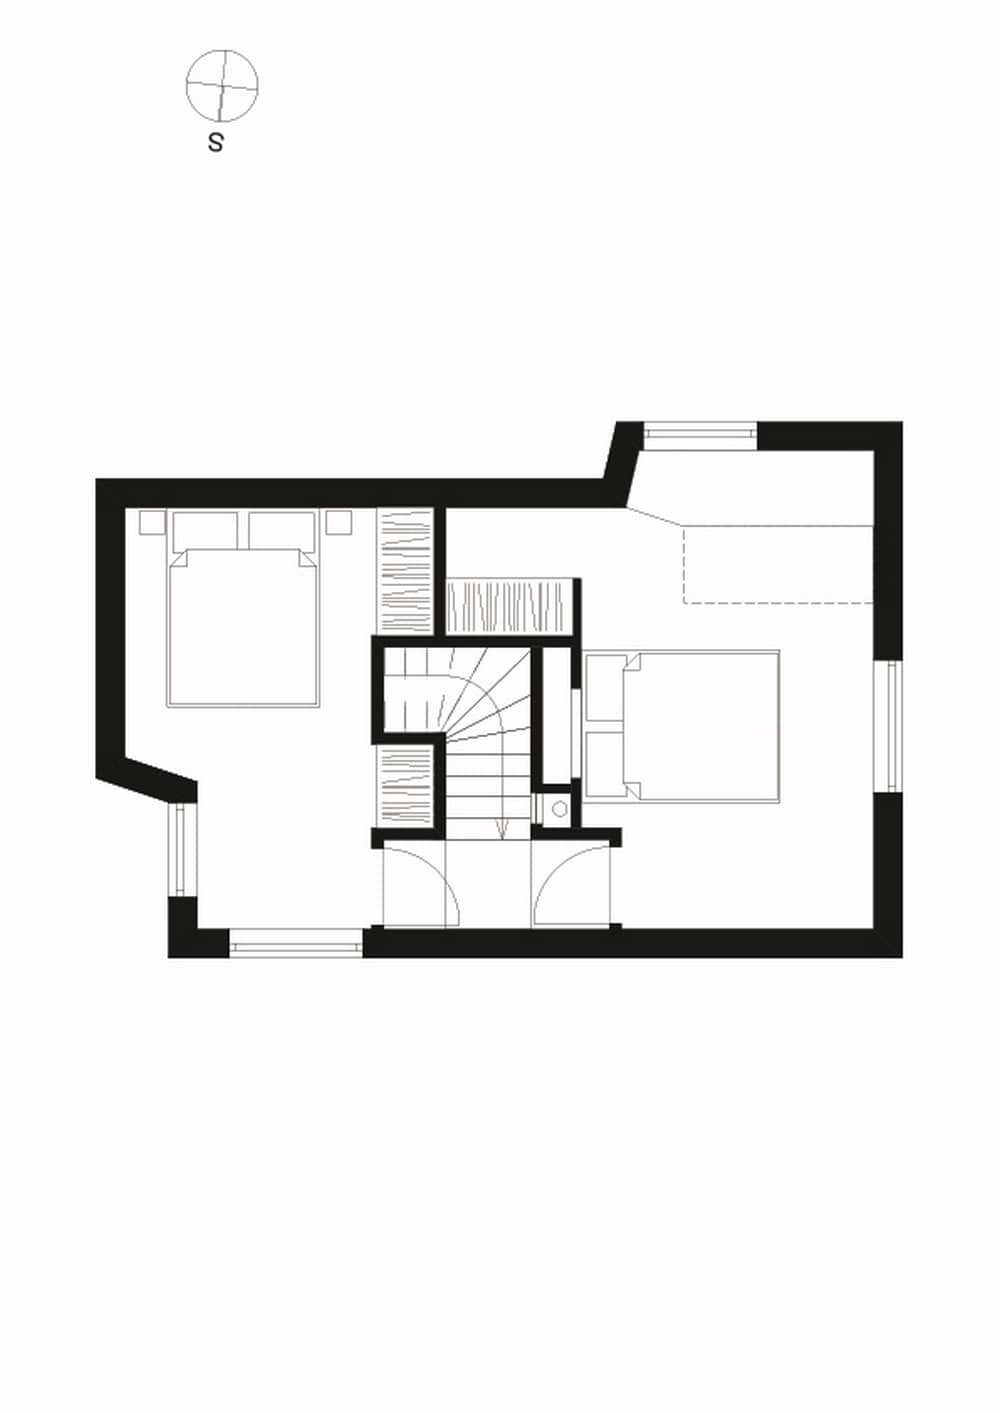 second floor plan